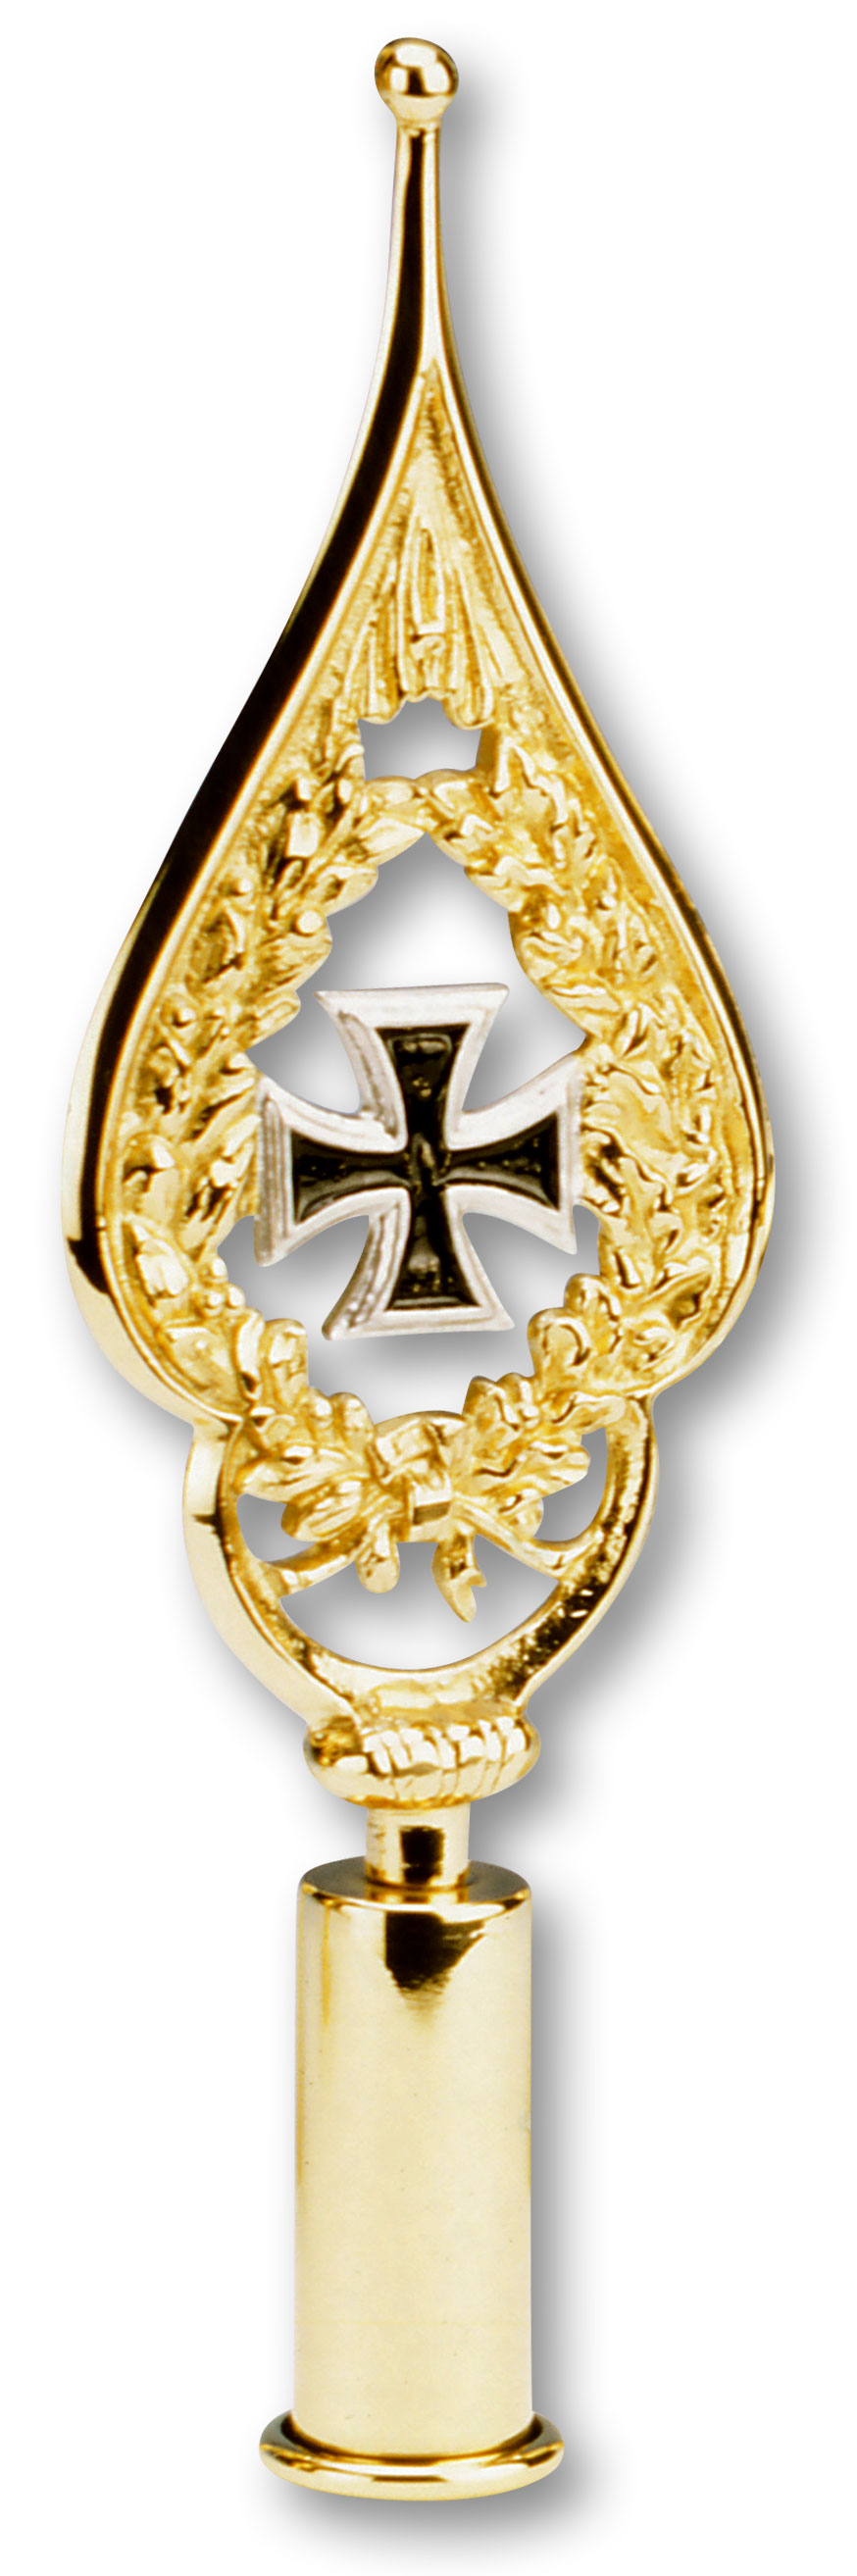 Eisernes Kreuz in Schwarz in einem goldfarbenen Rahmen. Der Rahmen ist goldfarben und läuft oben spitz zu.